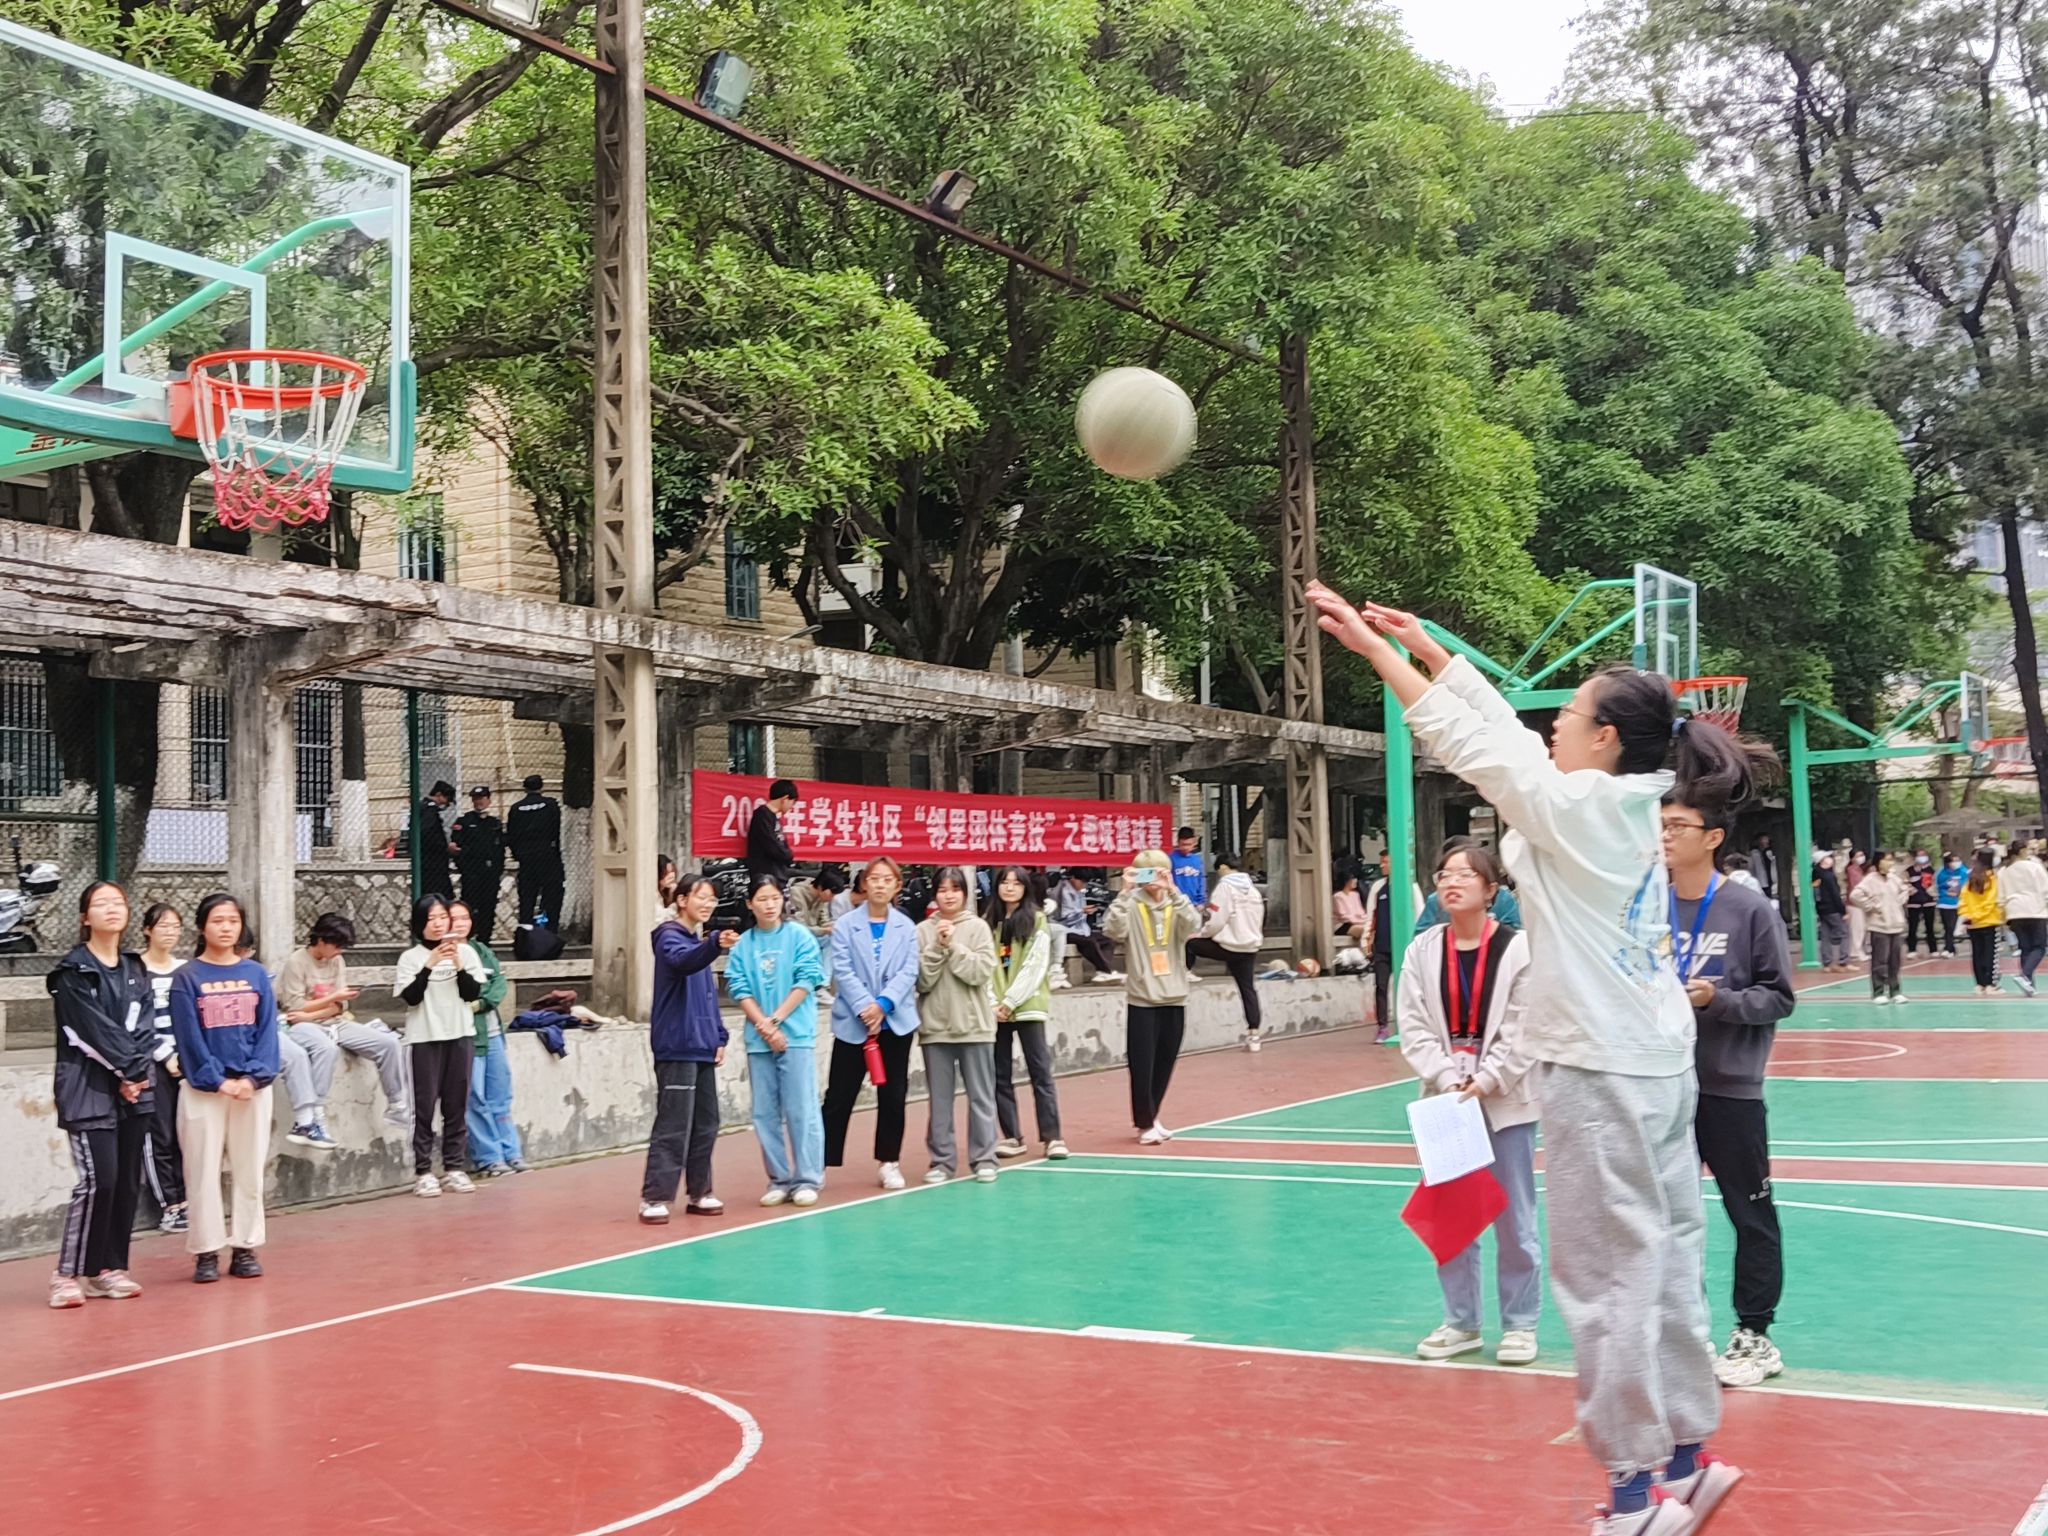 学生社区邻里团体竞技之趣味篮球赛jpg